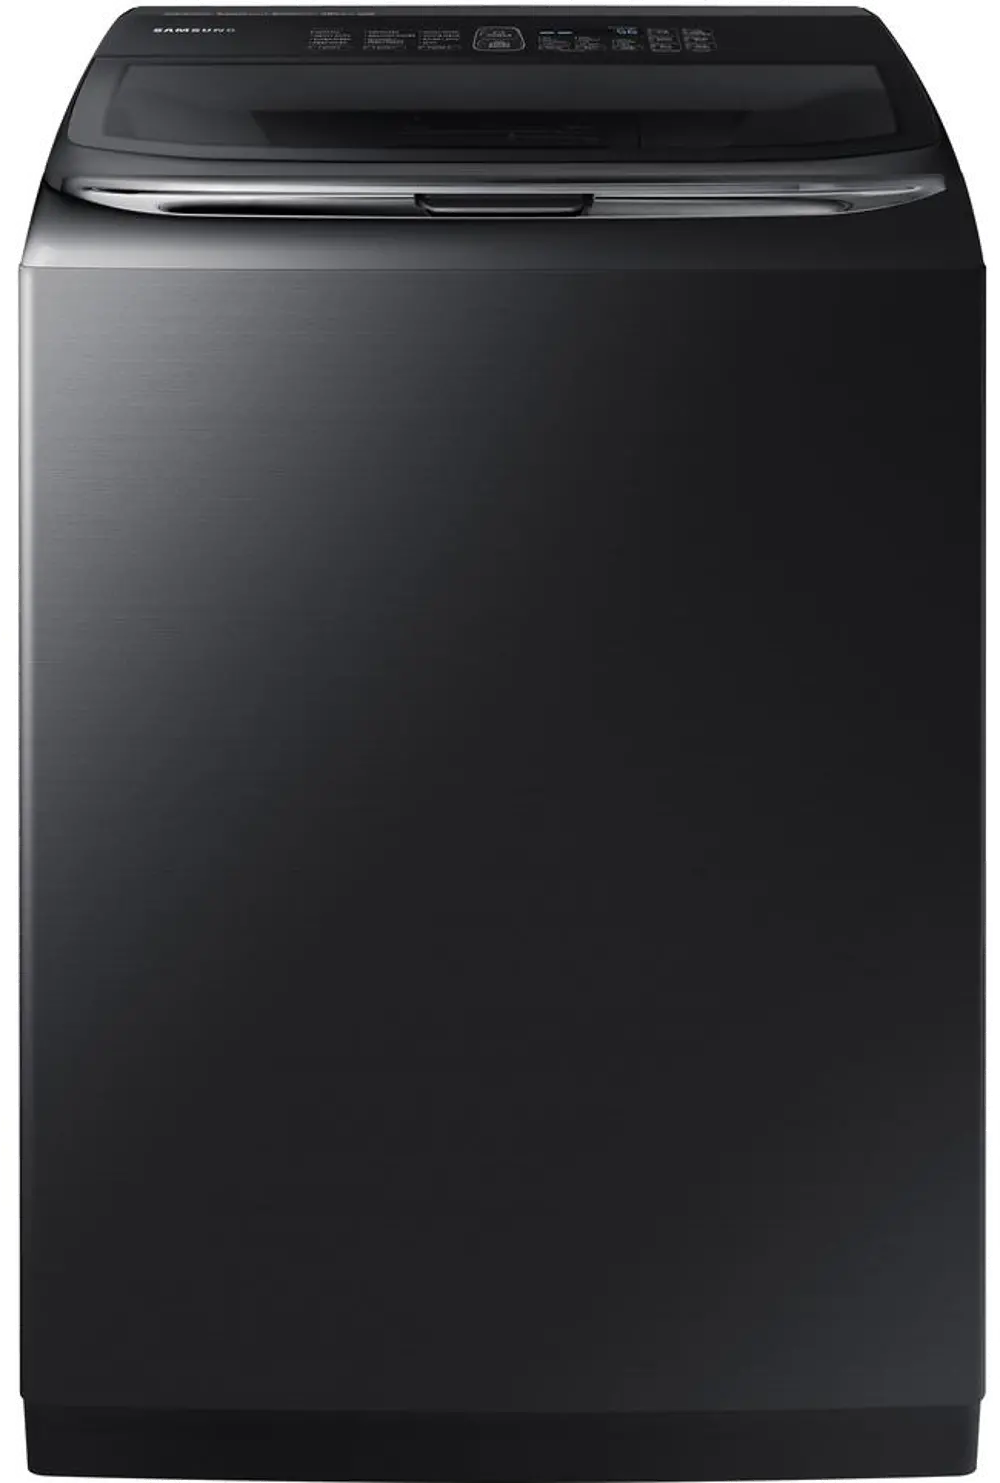 WA52M8650AV Samsung Top Load Washer ActiveWash Sink - 5.2 cu. ft. Black Stainless Steel-1